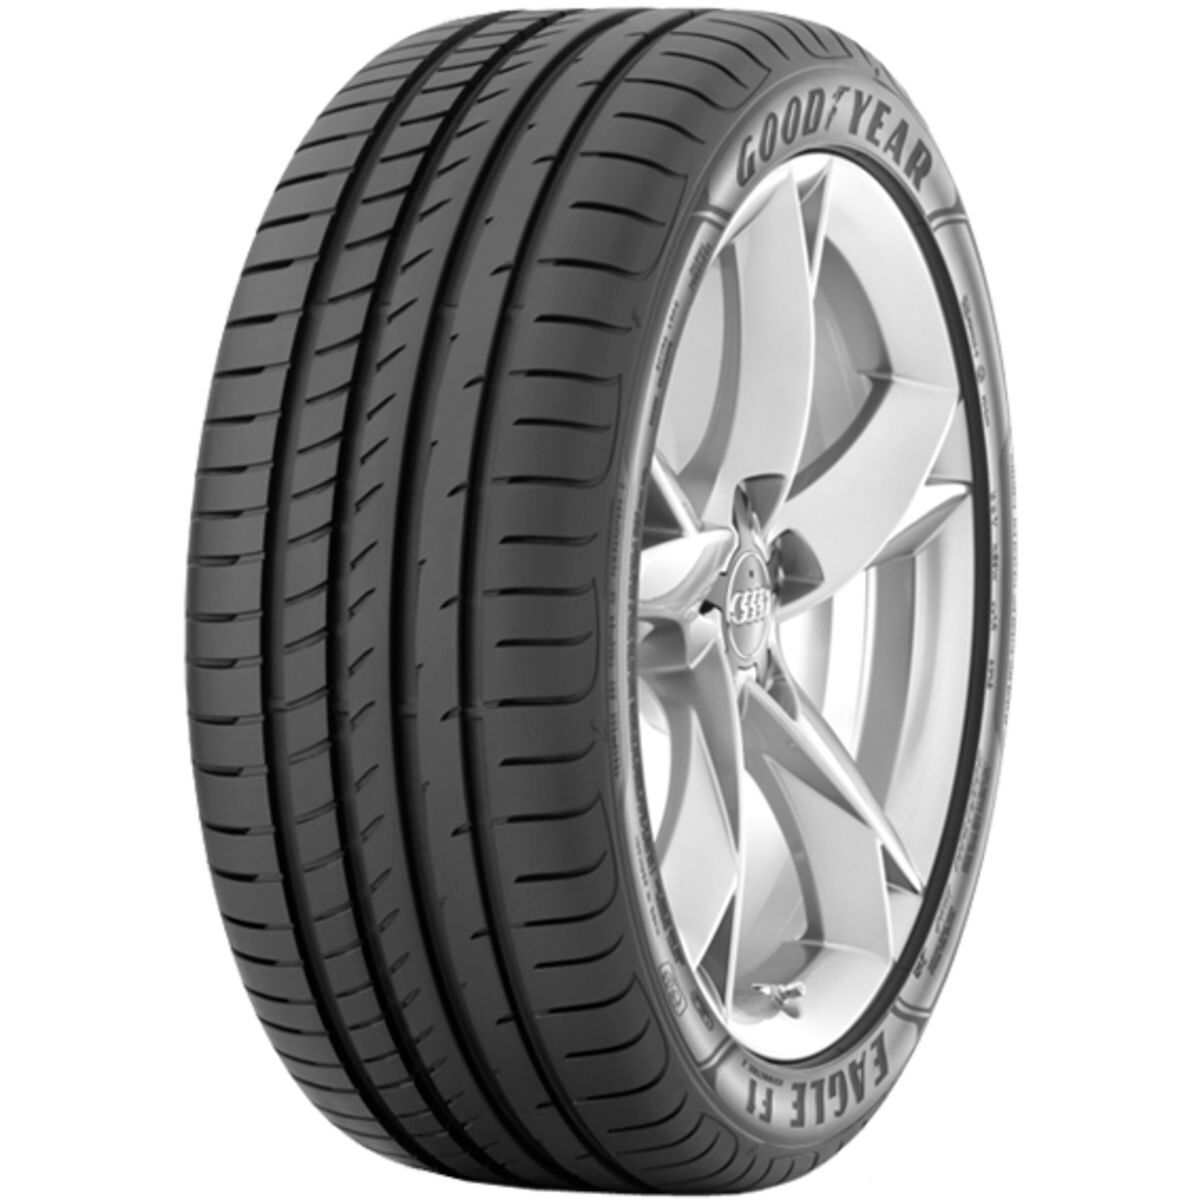 Neumáticos de verano GOODYEAR Eagle F1 Asymmetric 2 225/40R18 XL 92W